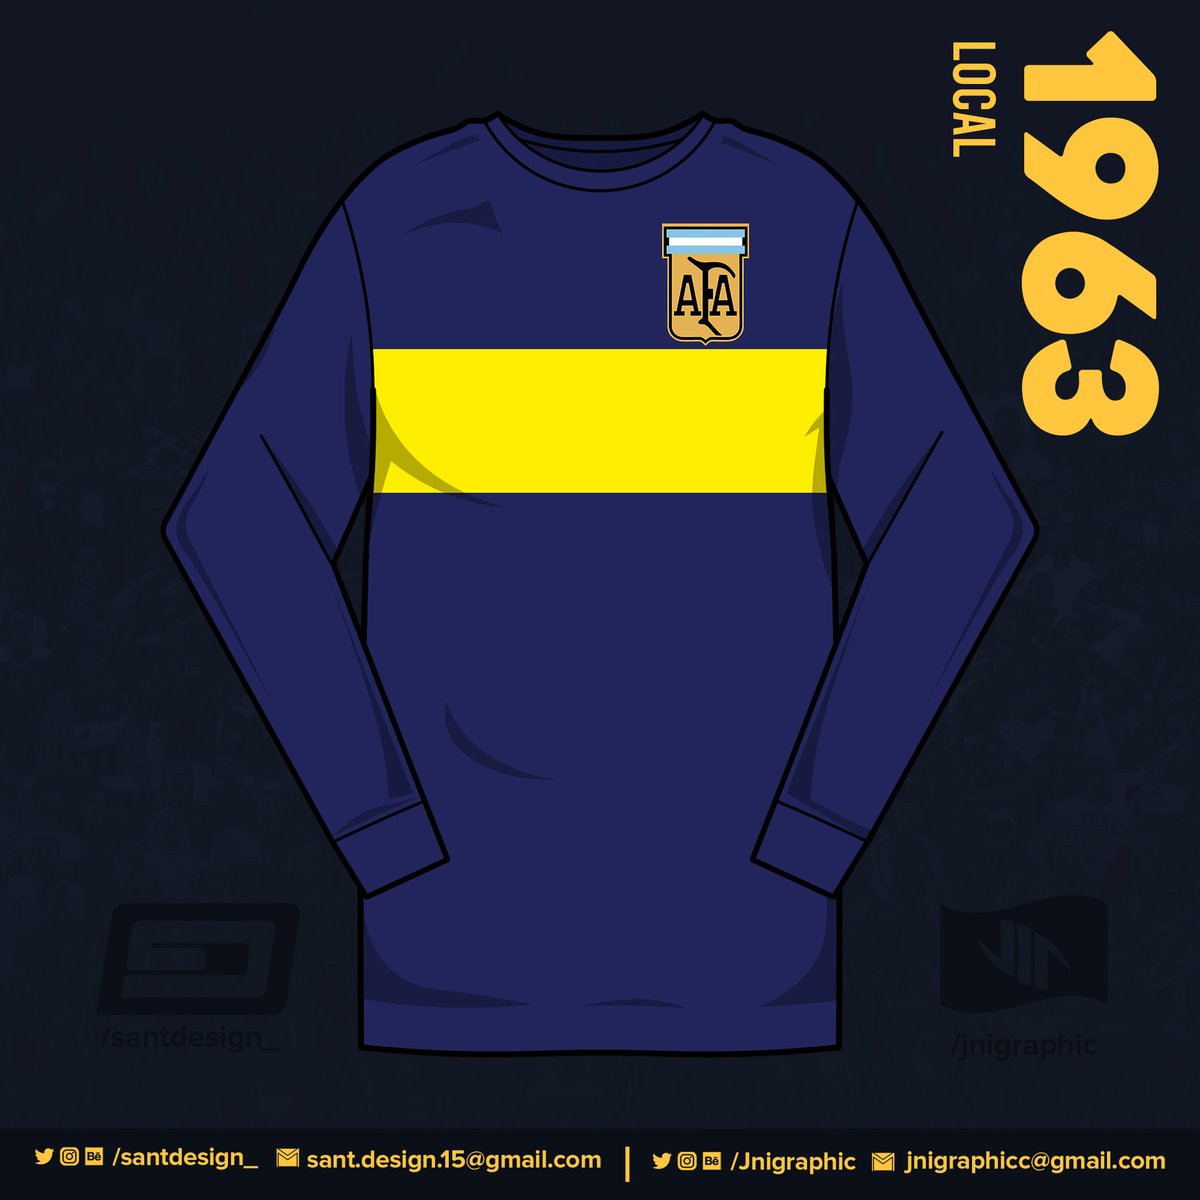 1961: Vuelve la "polera", y es con esta camiseta que obtienen el título de 1962 por lo que deben volver a lucir el escudo de la Asociación del Futbol Argentino en 1963.